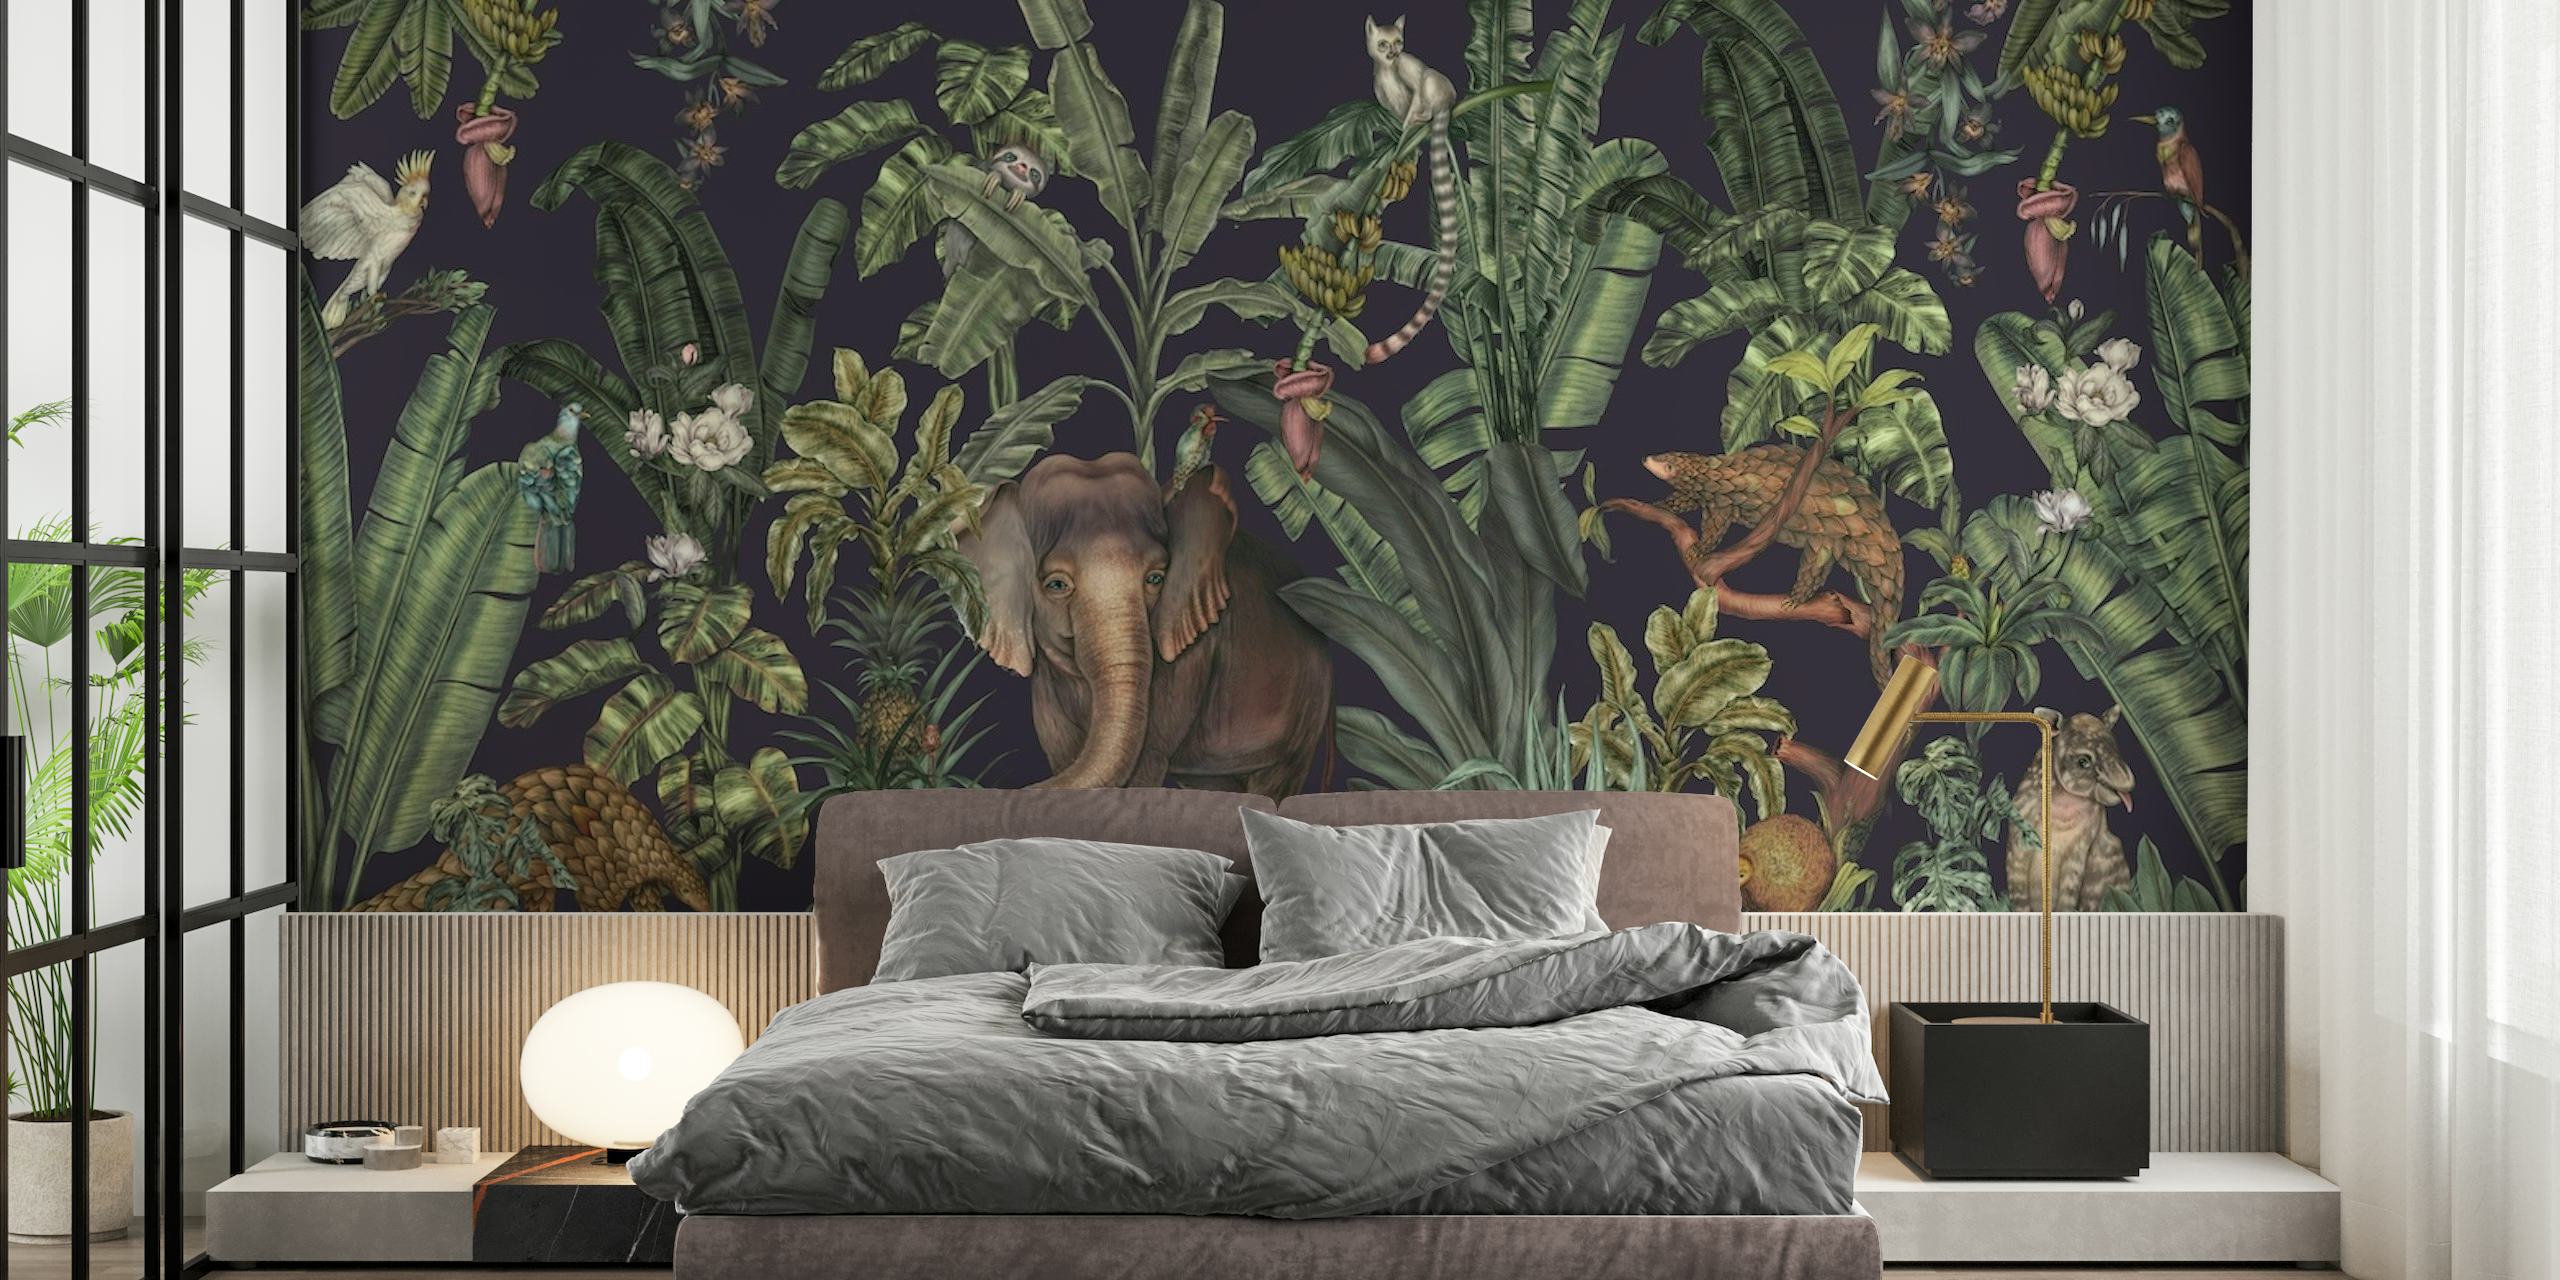 Tropische jungle muurschildering met dicht groen en verborgen dieren in het wild